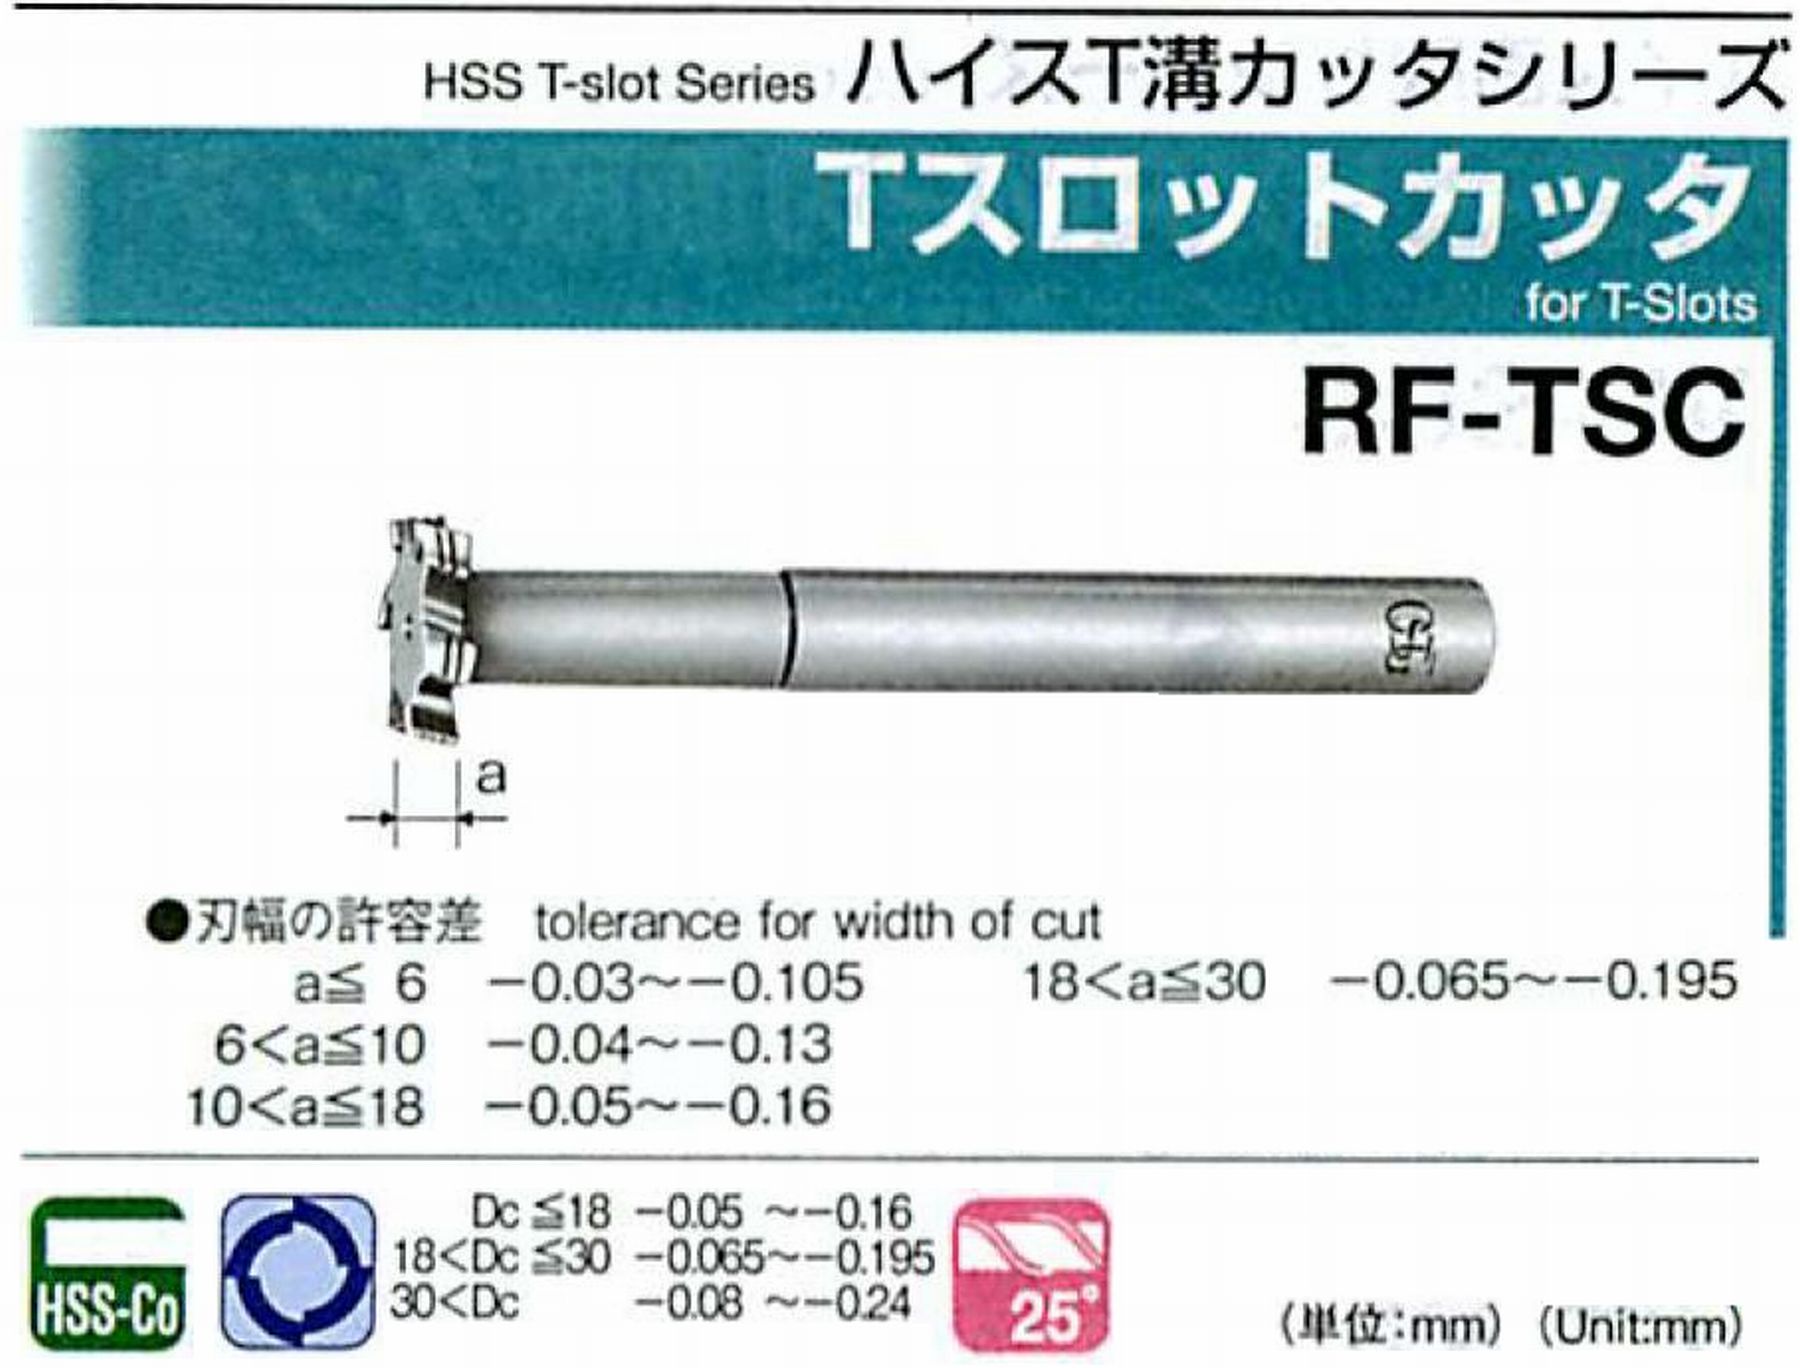 オーエスジー/OSG Tスロットカッタ RF-TSC 外径30 刃幅5 全長145 シャンク径16mm 首下長50 首径15 刃数6